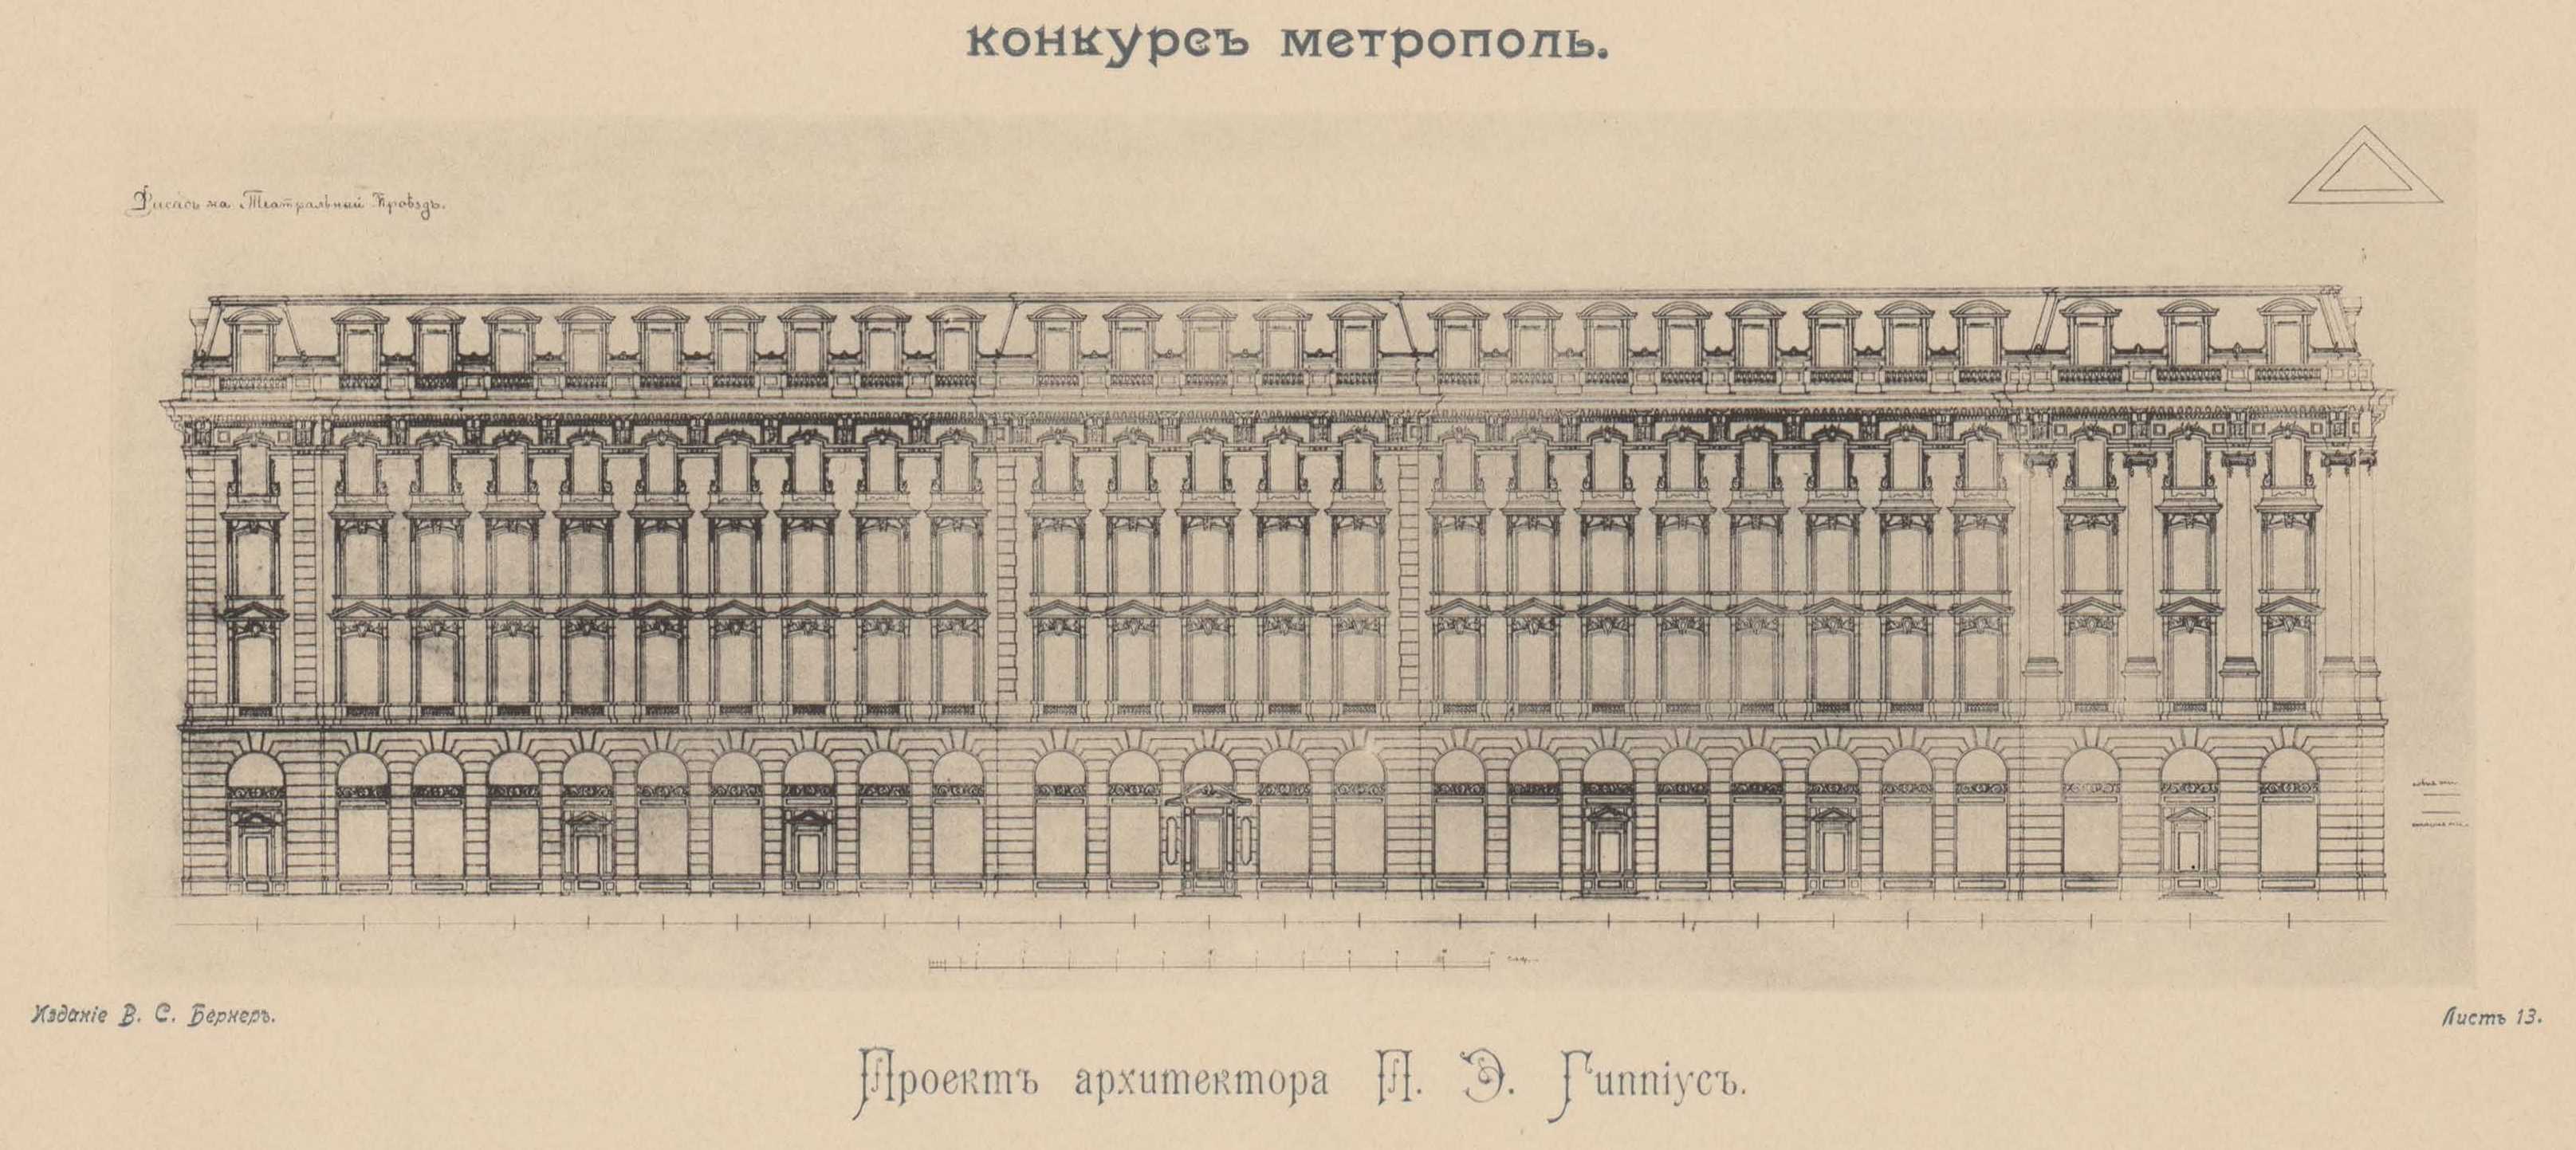 Конкурс на фасад гостиницы «Метрополь» (1899). Проект рекомендованный жюри для приобретения. Проект архитектора П. Э. Гиппиус. Фасад по Театральному проезду